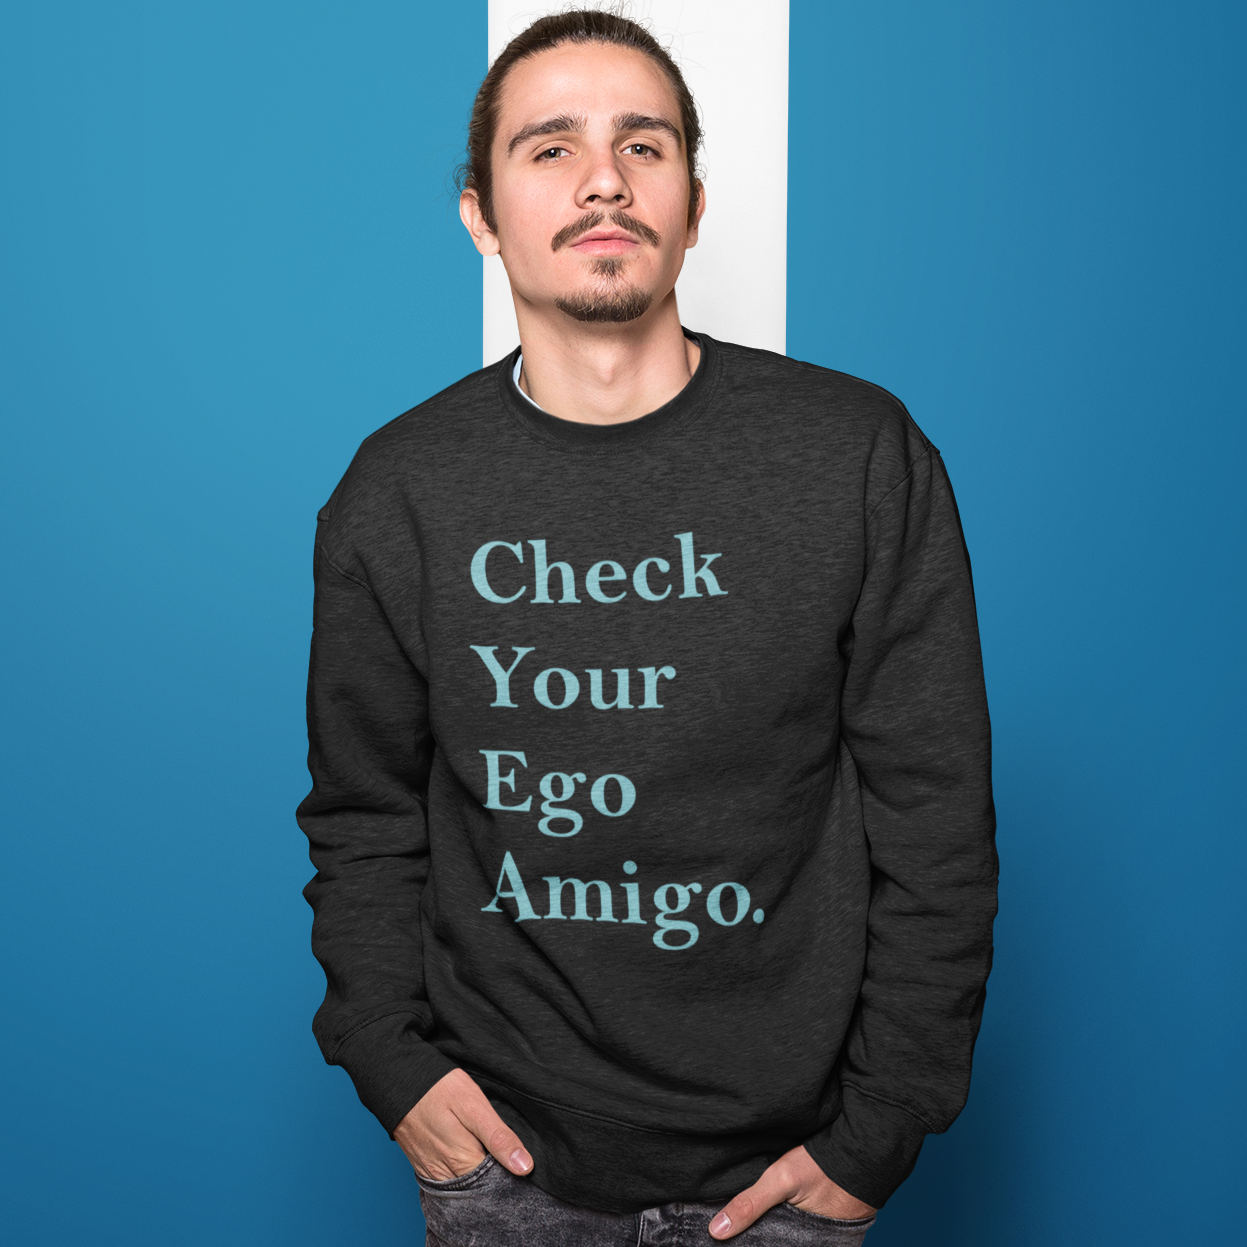 Check Your Ego Amigo - Stylish Latest Branded Comic Printed Hoodies & Sweatshirt – TheTeeshop